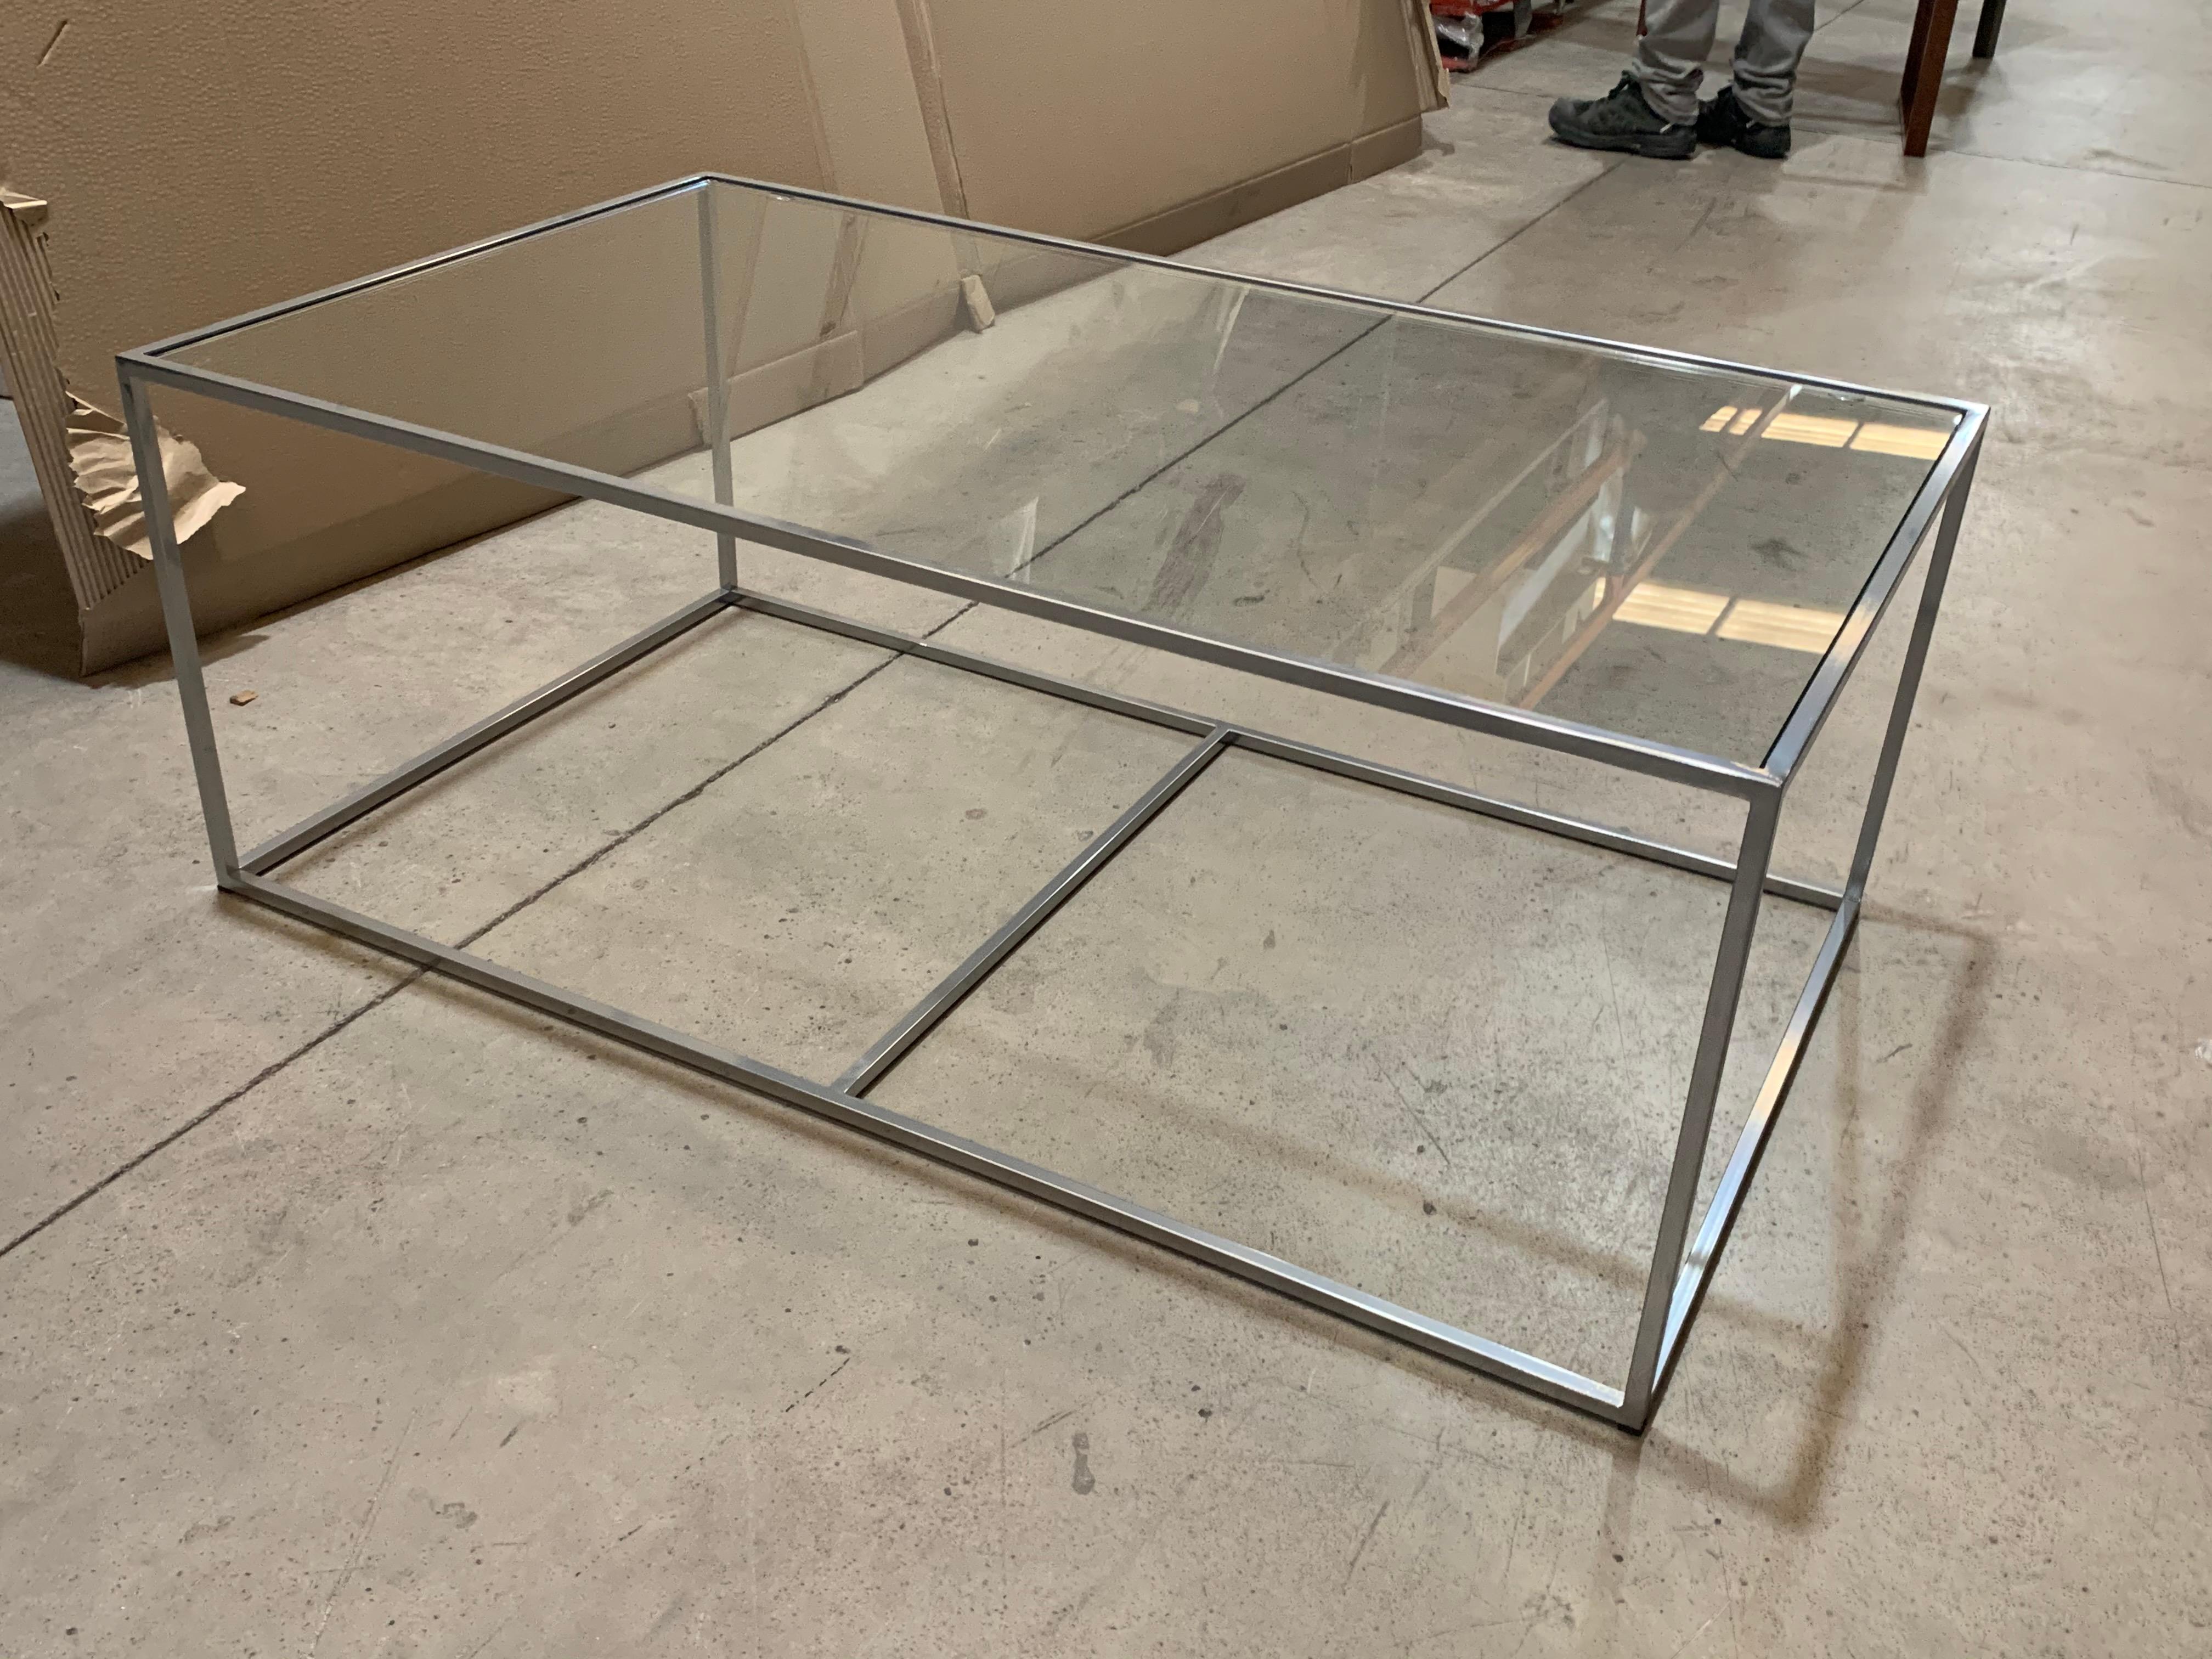 Neuer moderner rechteckiger weißer Tisch mit Glasplatte. Innen oder außen.

Schmiedeeisen.
 